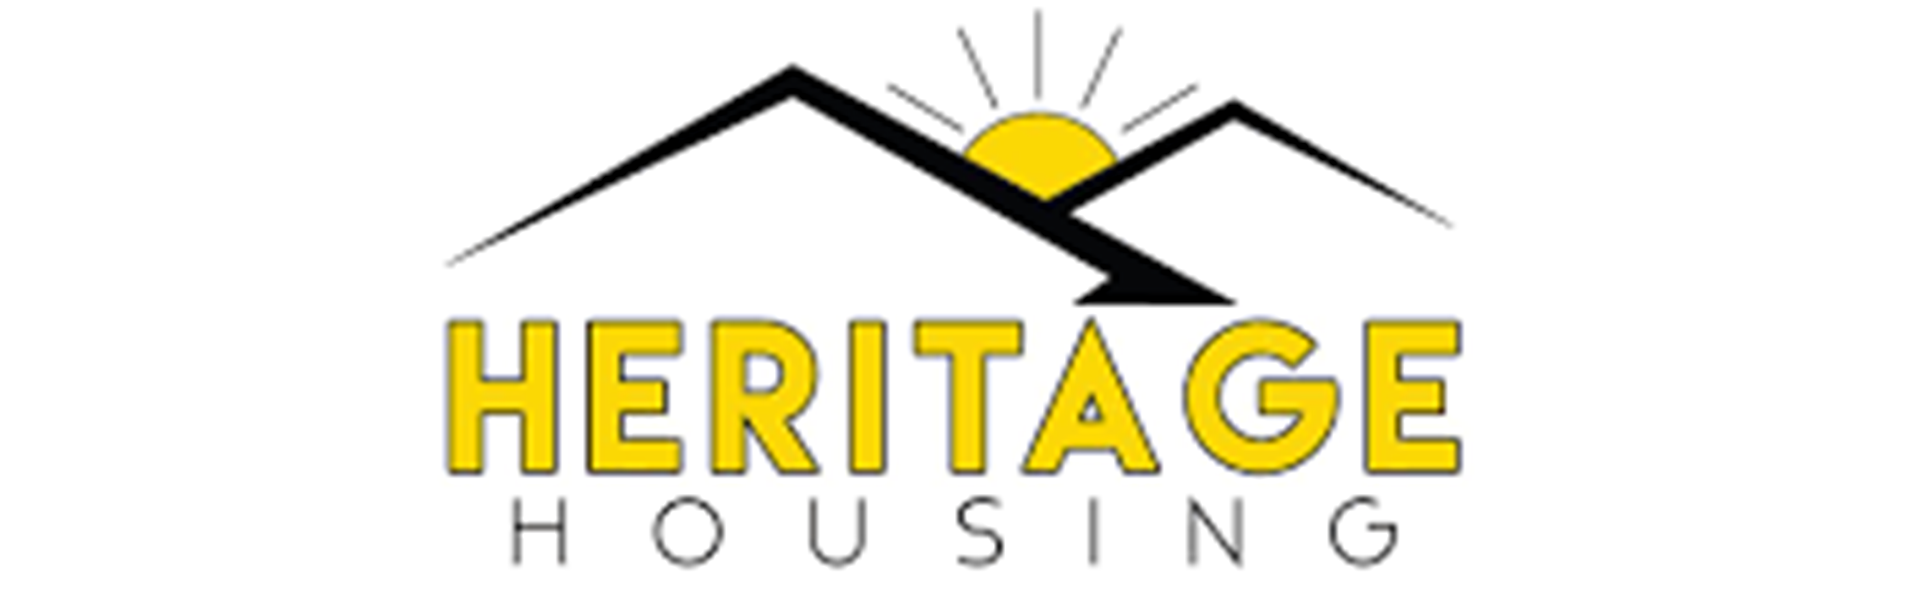 Heritage Housing logo